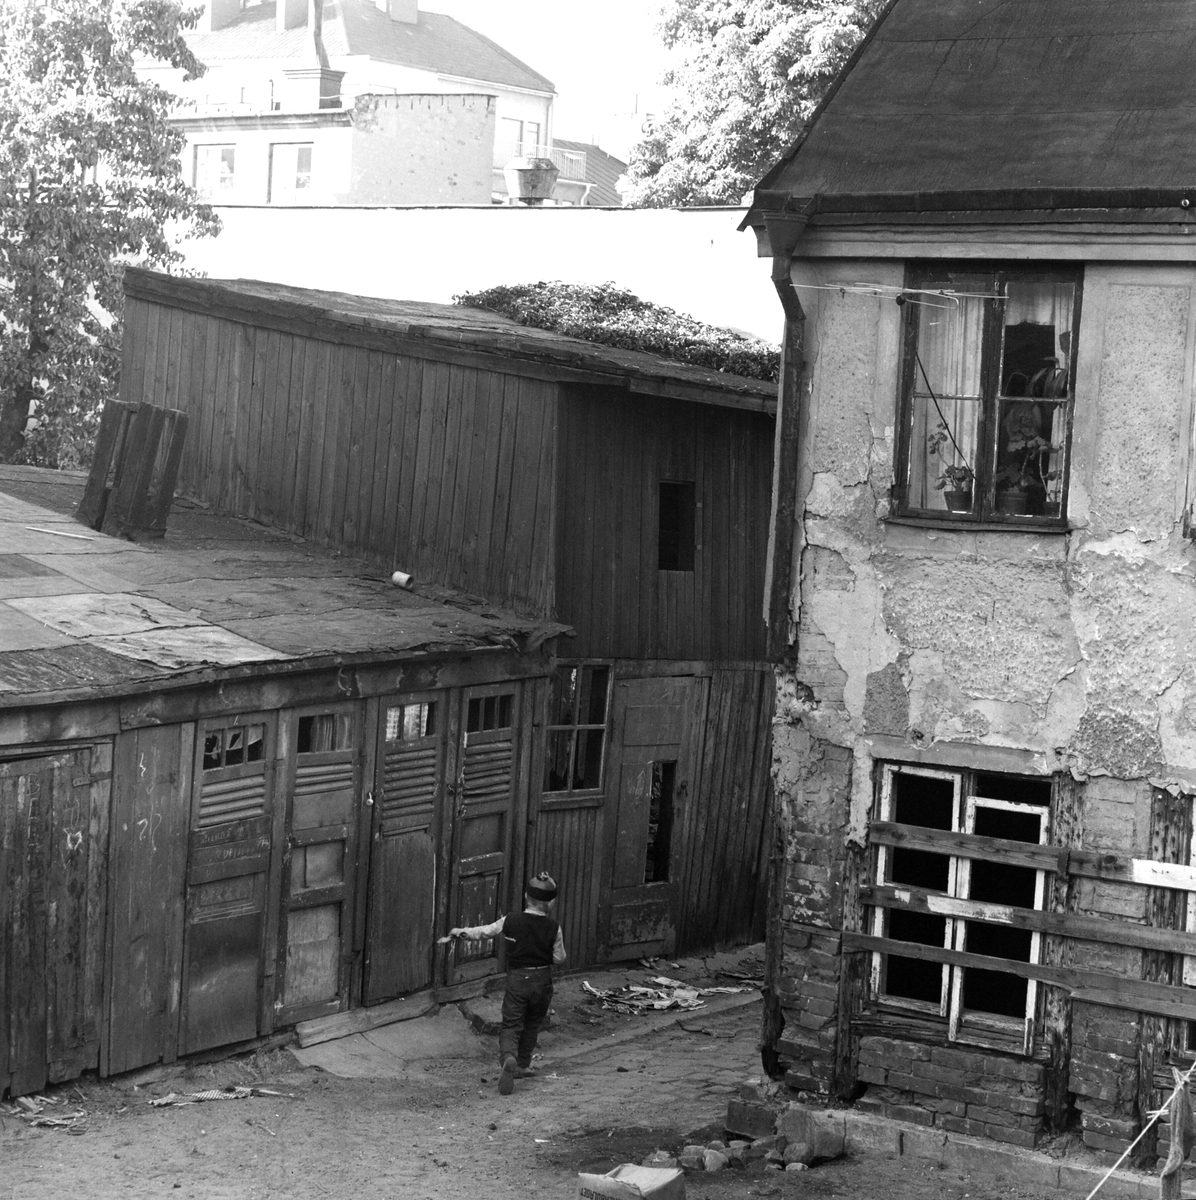 Gård i Norrköpings centrum. 1959.
Pressfotografier från 1950-1960-talet. Samtliga bilder är tagna i Östergötland, de flesta i Linköping.